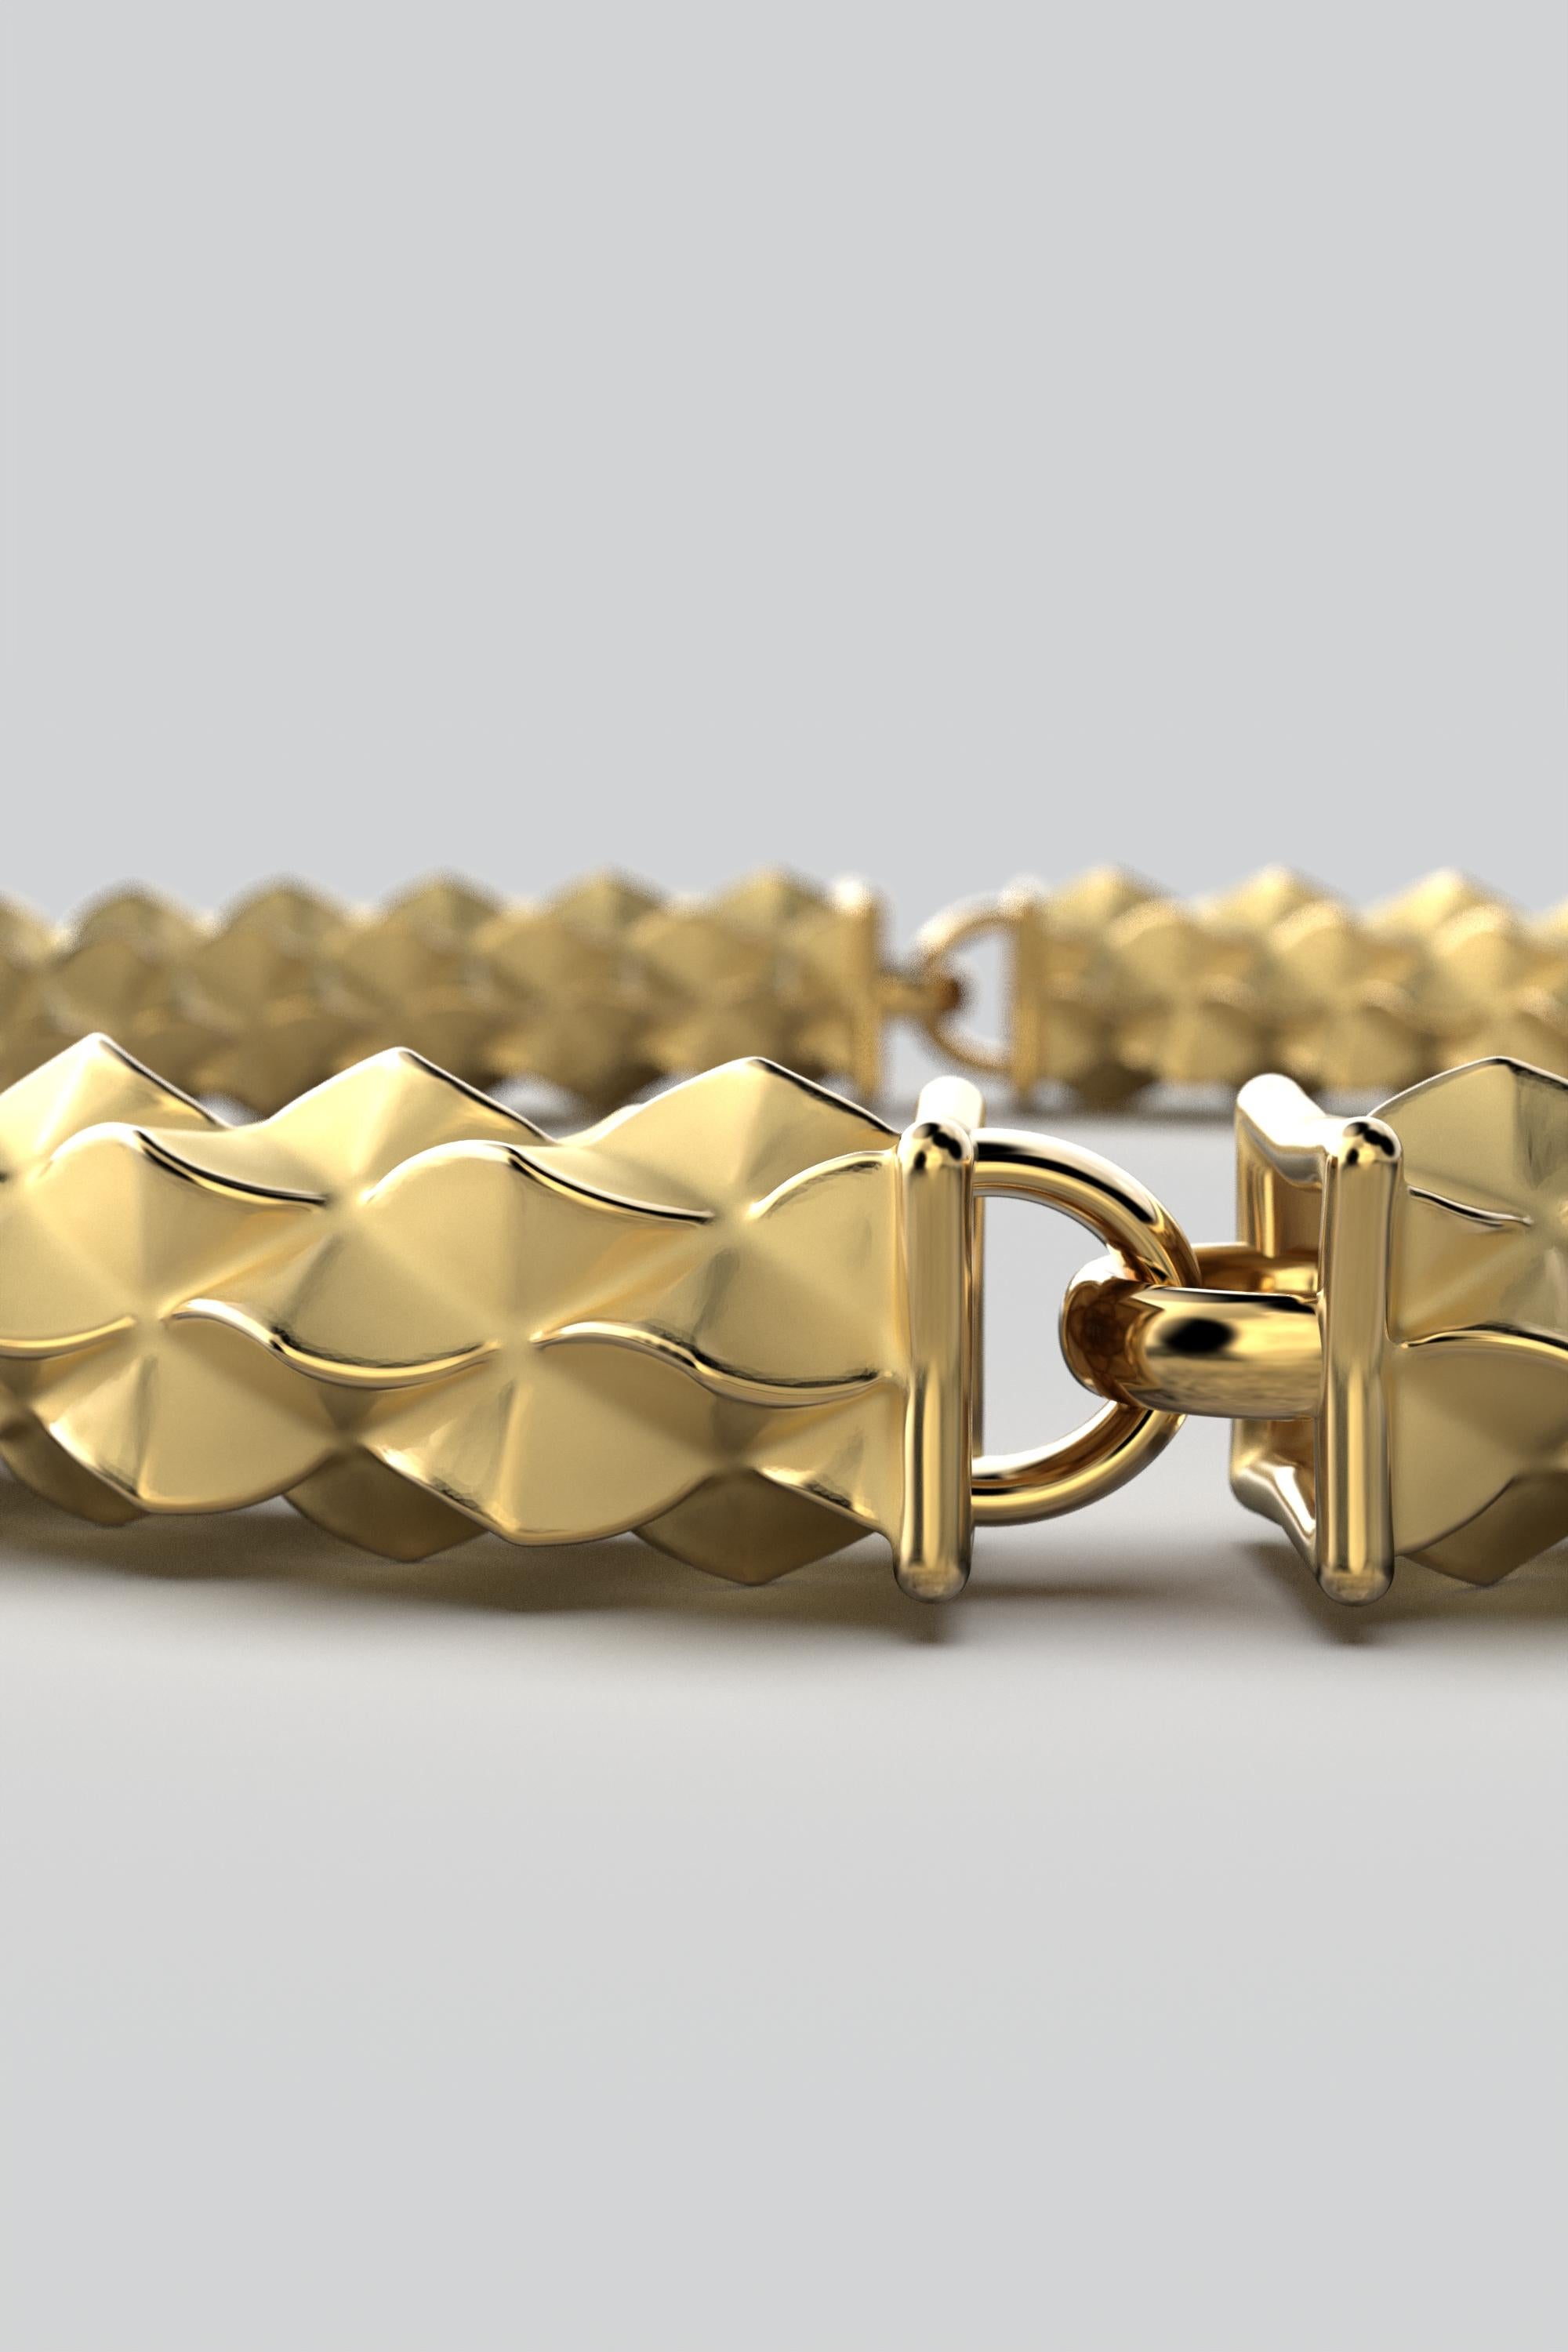 Contemporary 18k Italian Gold Bracelet: Custom Semi-Rigid Design by Oltremare Gioielli For Sale